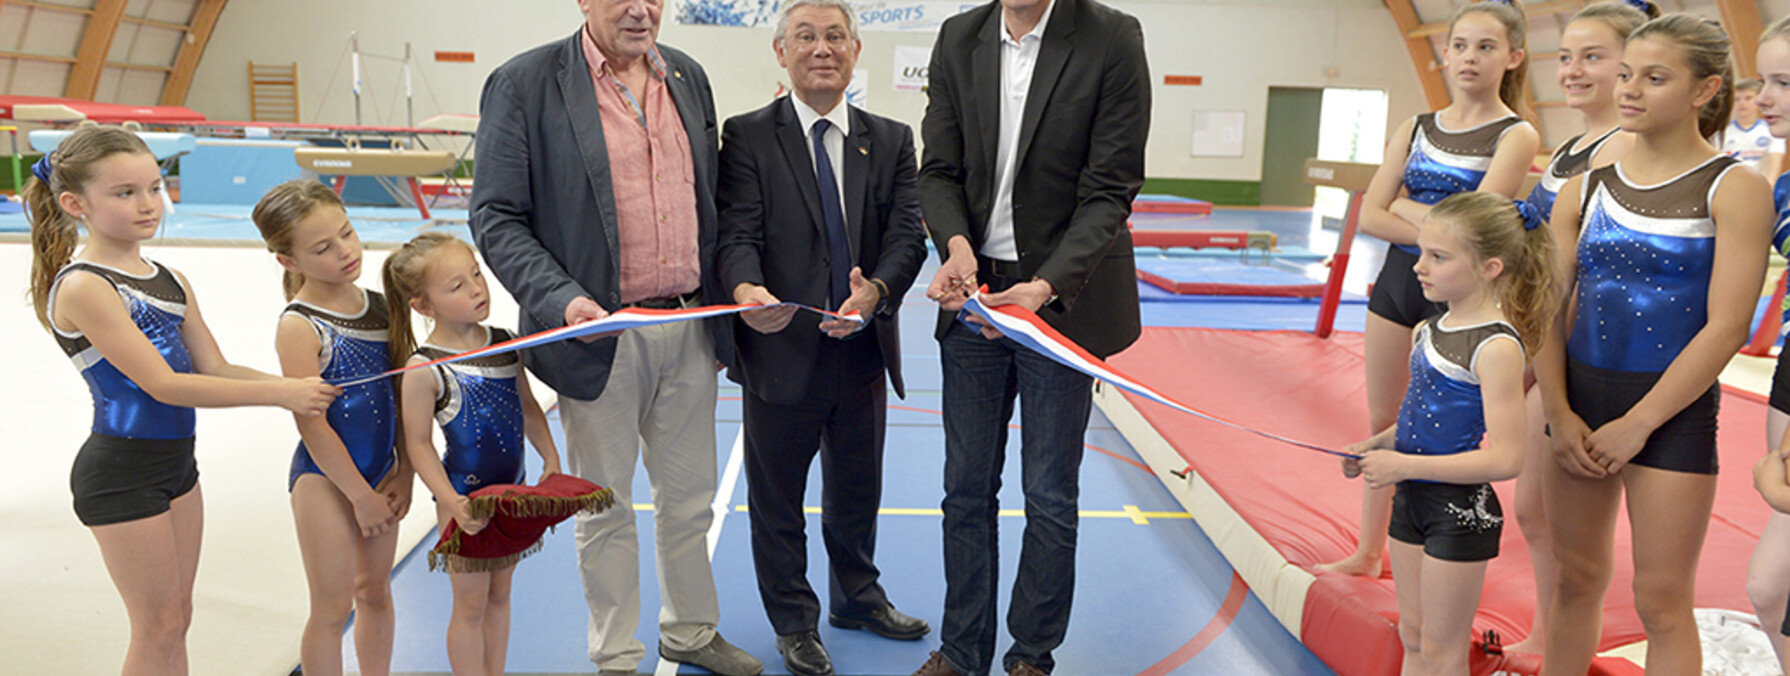 Inauguration salle de sport du Pontreau dédiée à la gym ©Darri